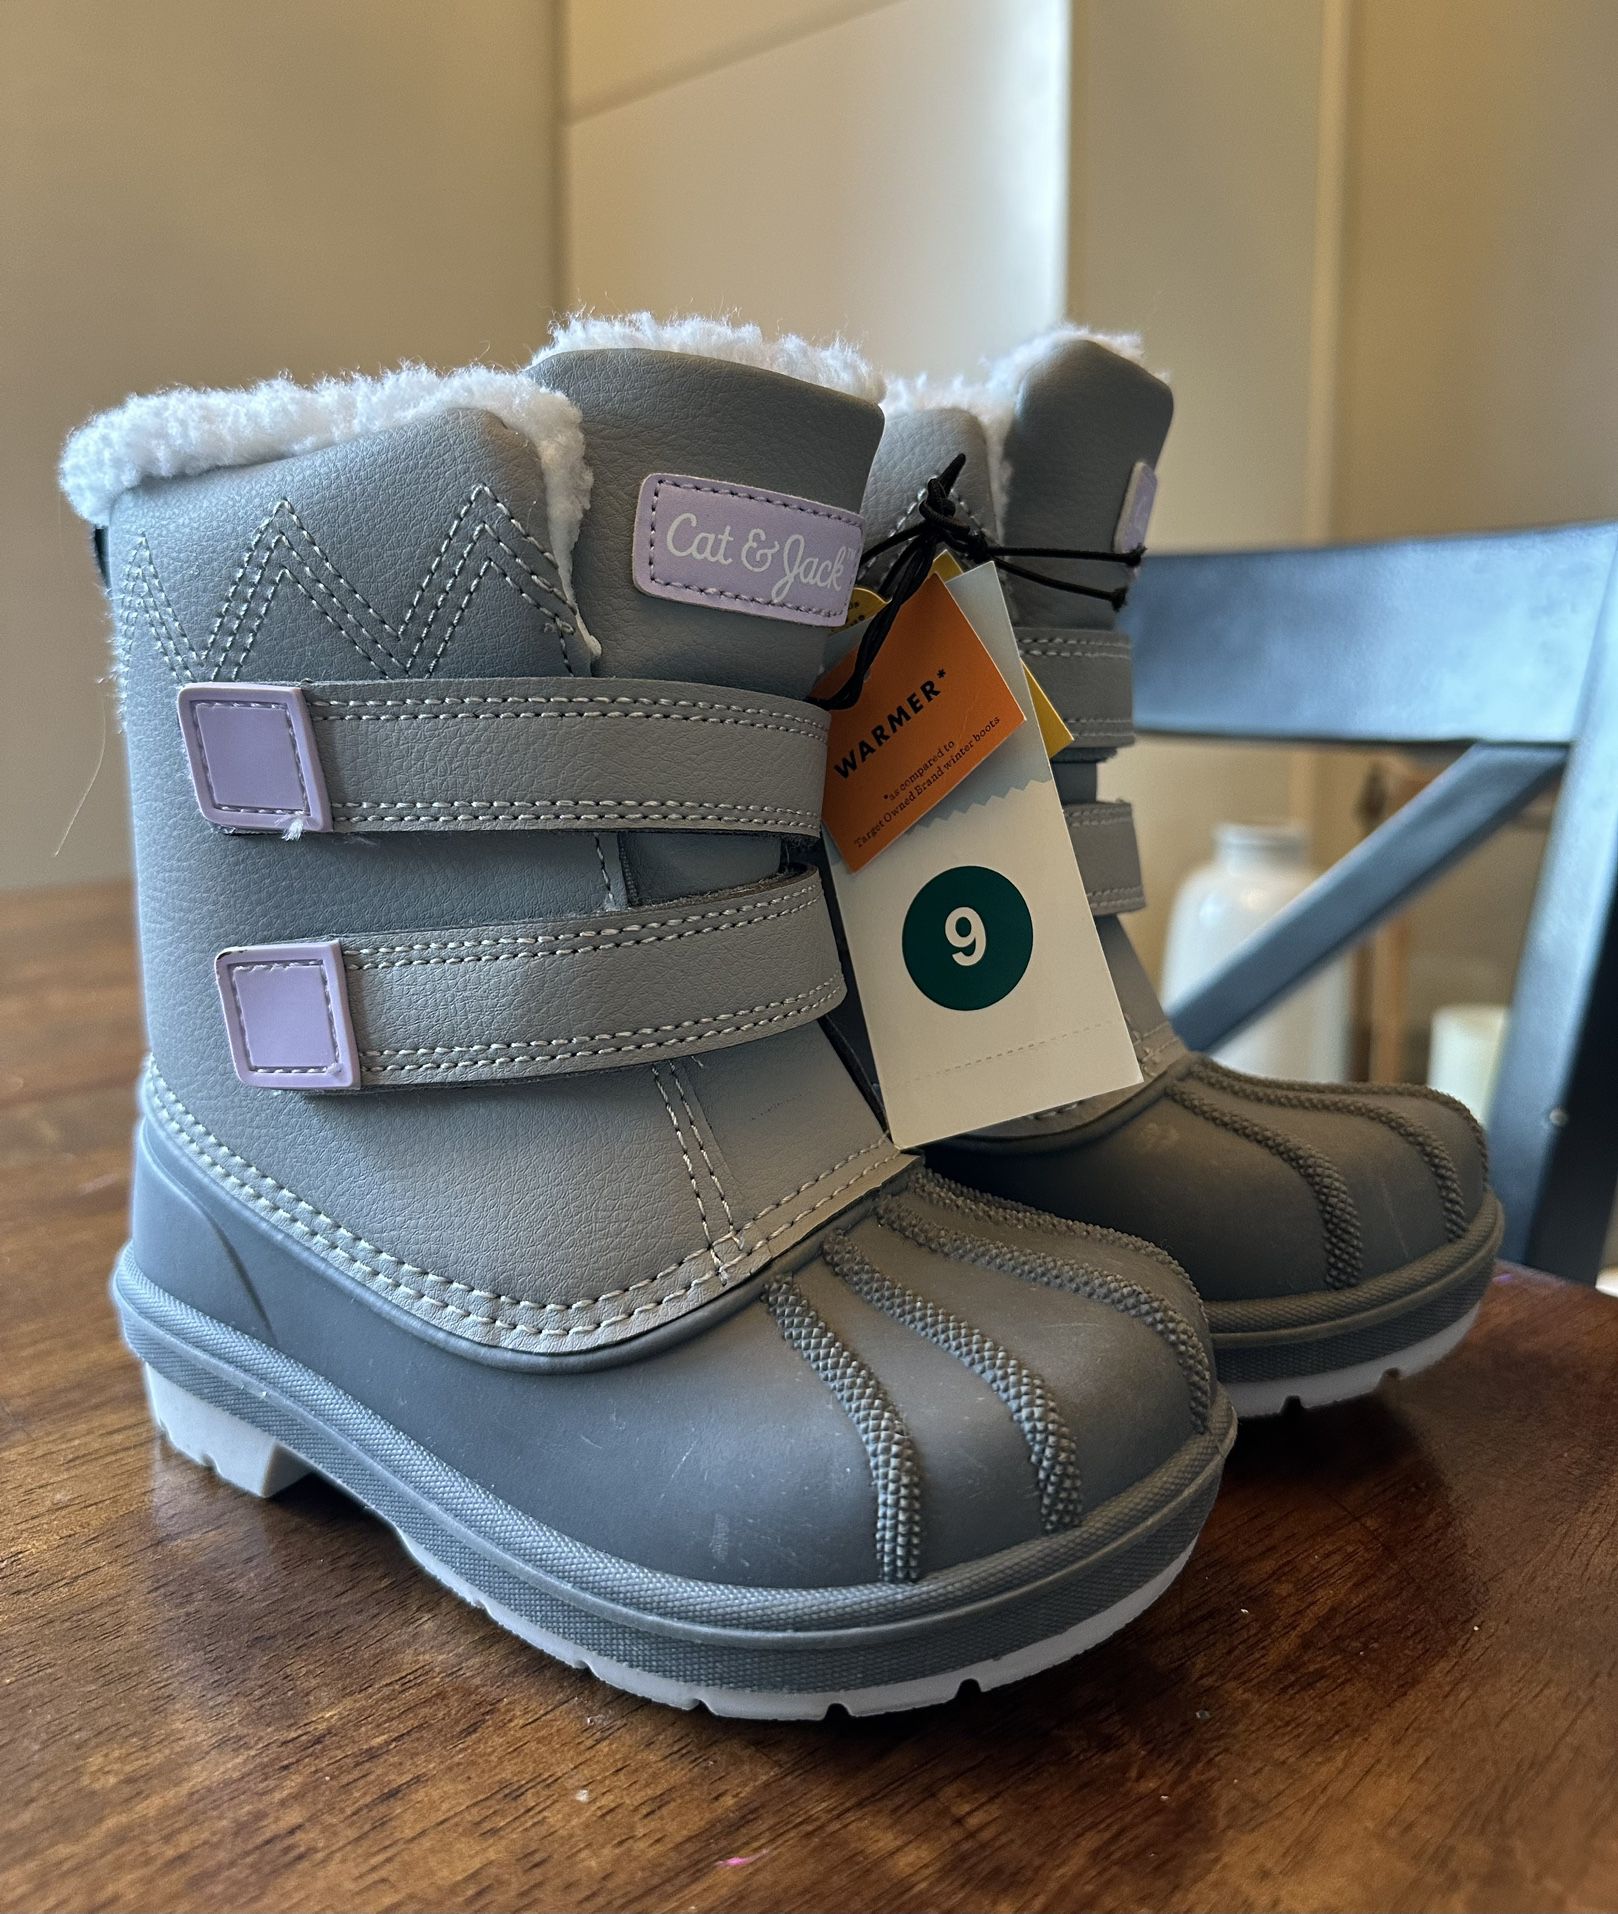 Cat & Jack Waterproof Snow Boots